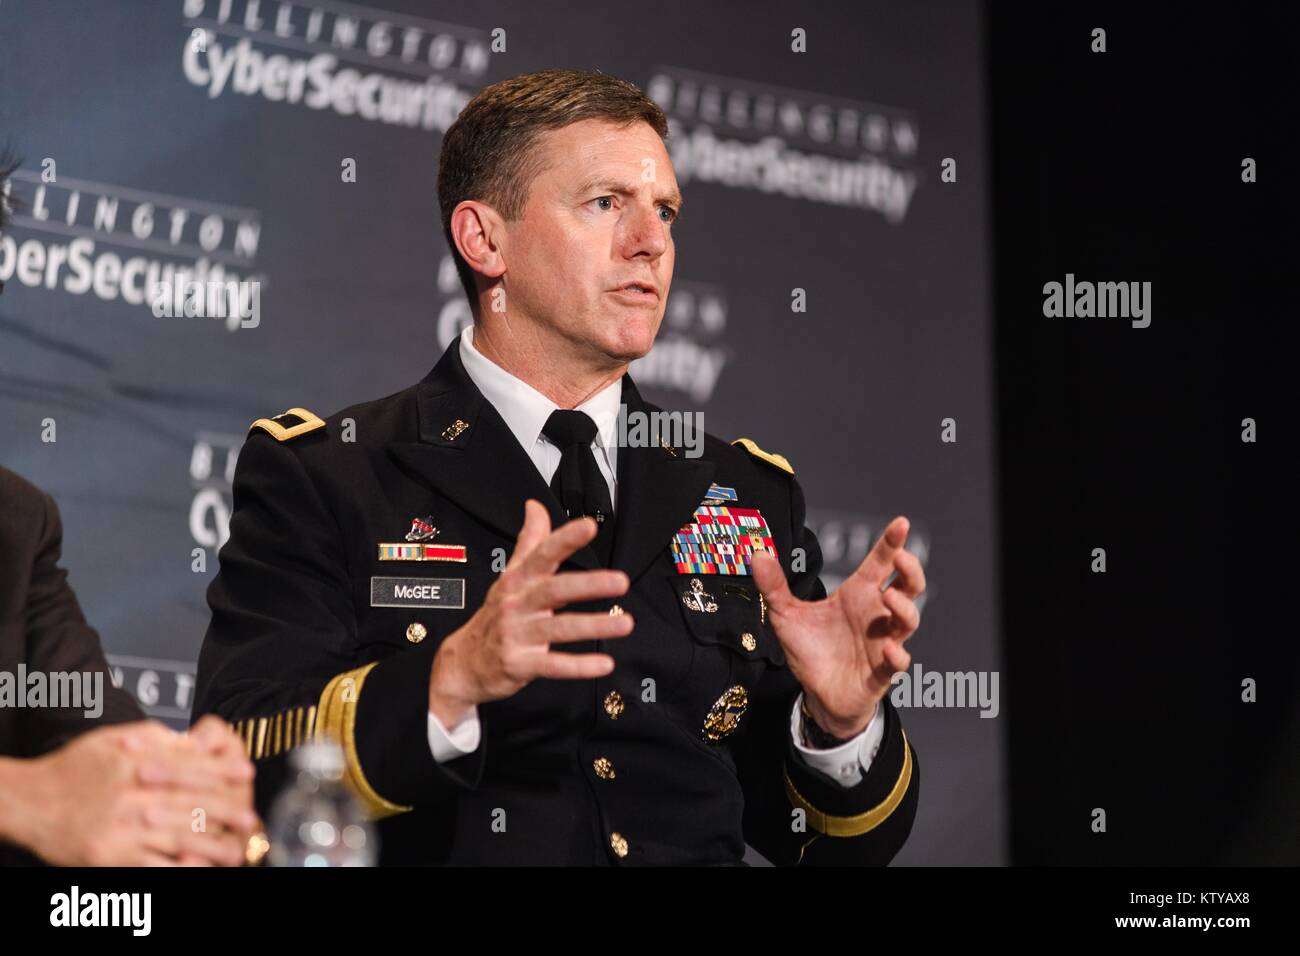 Ejército de EE.UU. Cyber Comando General Comandante Adjunto de Operaciones JP McGee, habla durante la octava cumbre anual sobre ciberseguridad Billington en el Centro de Convenciones de Washington el 13 de septiembre de 2017 en Washington, DC. Foto de stock